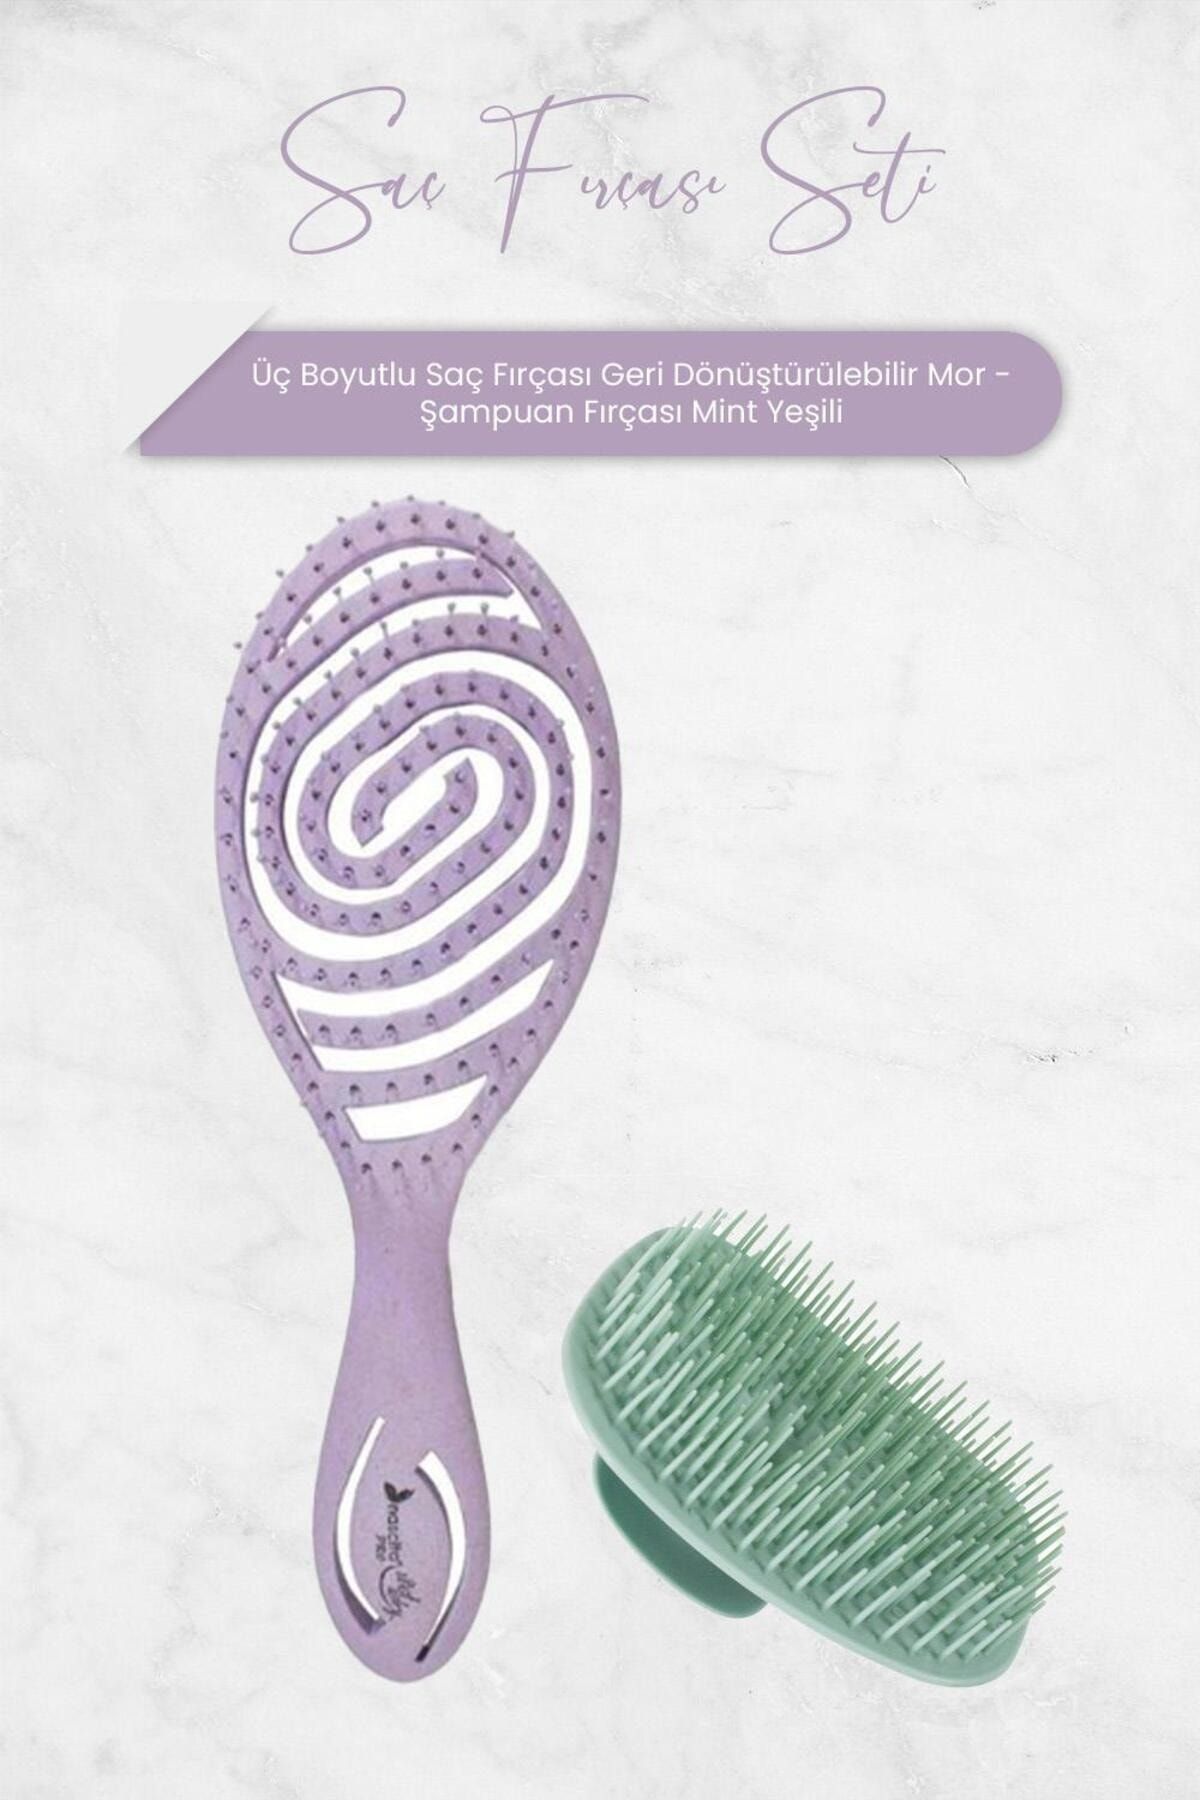 Nascita Üç Boyutlu Saç Fırçası Geri Dönüştürülebilir Mor ve Şampuan Fırçası Mint Yeşili